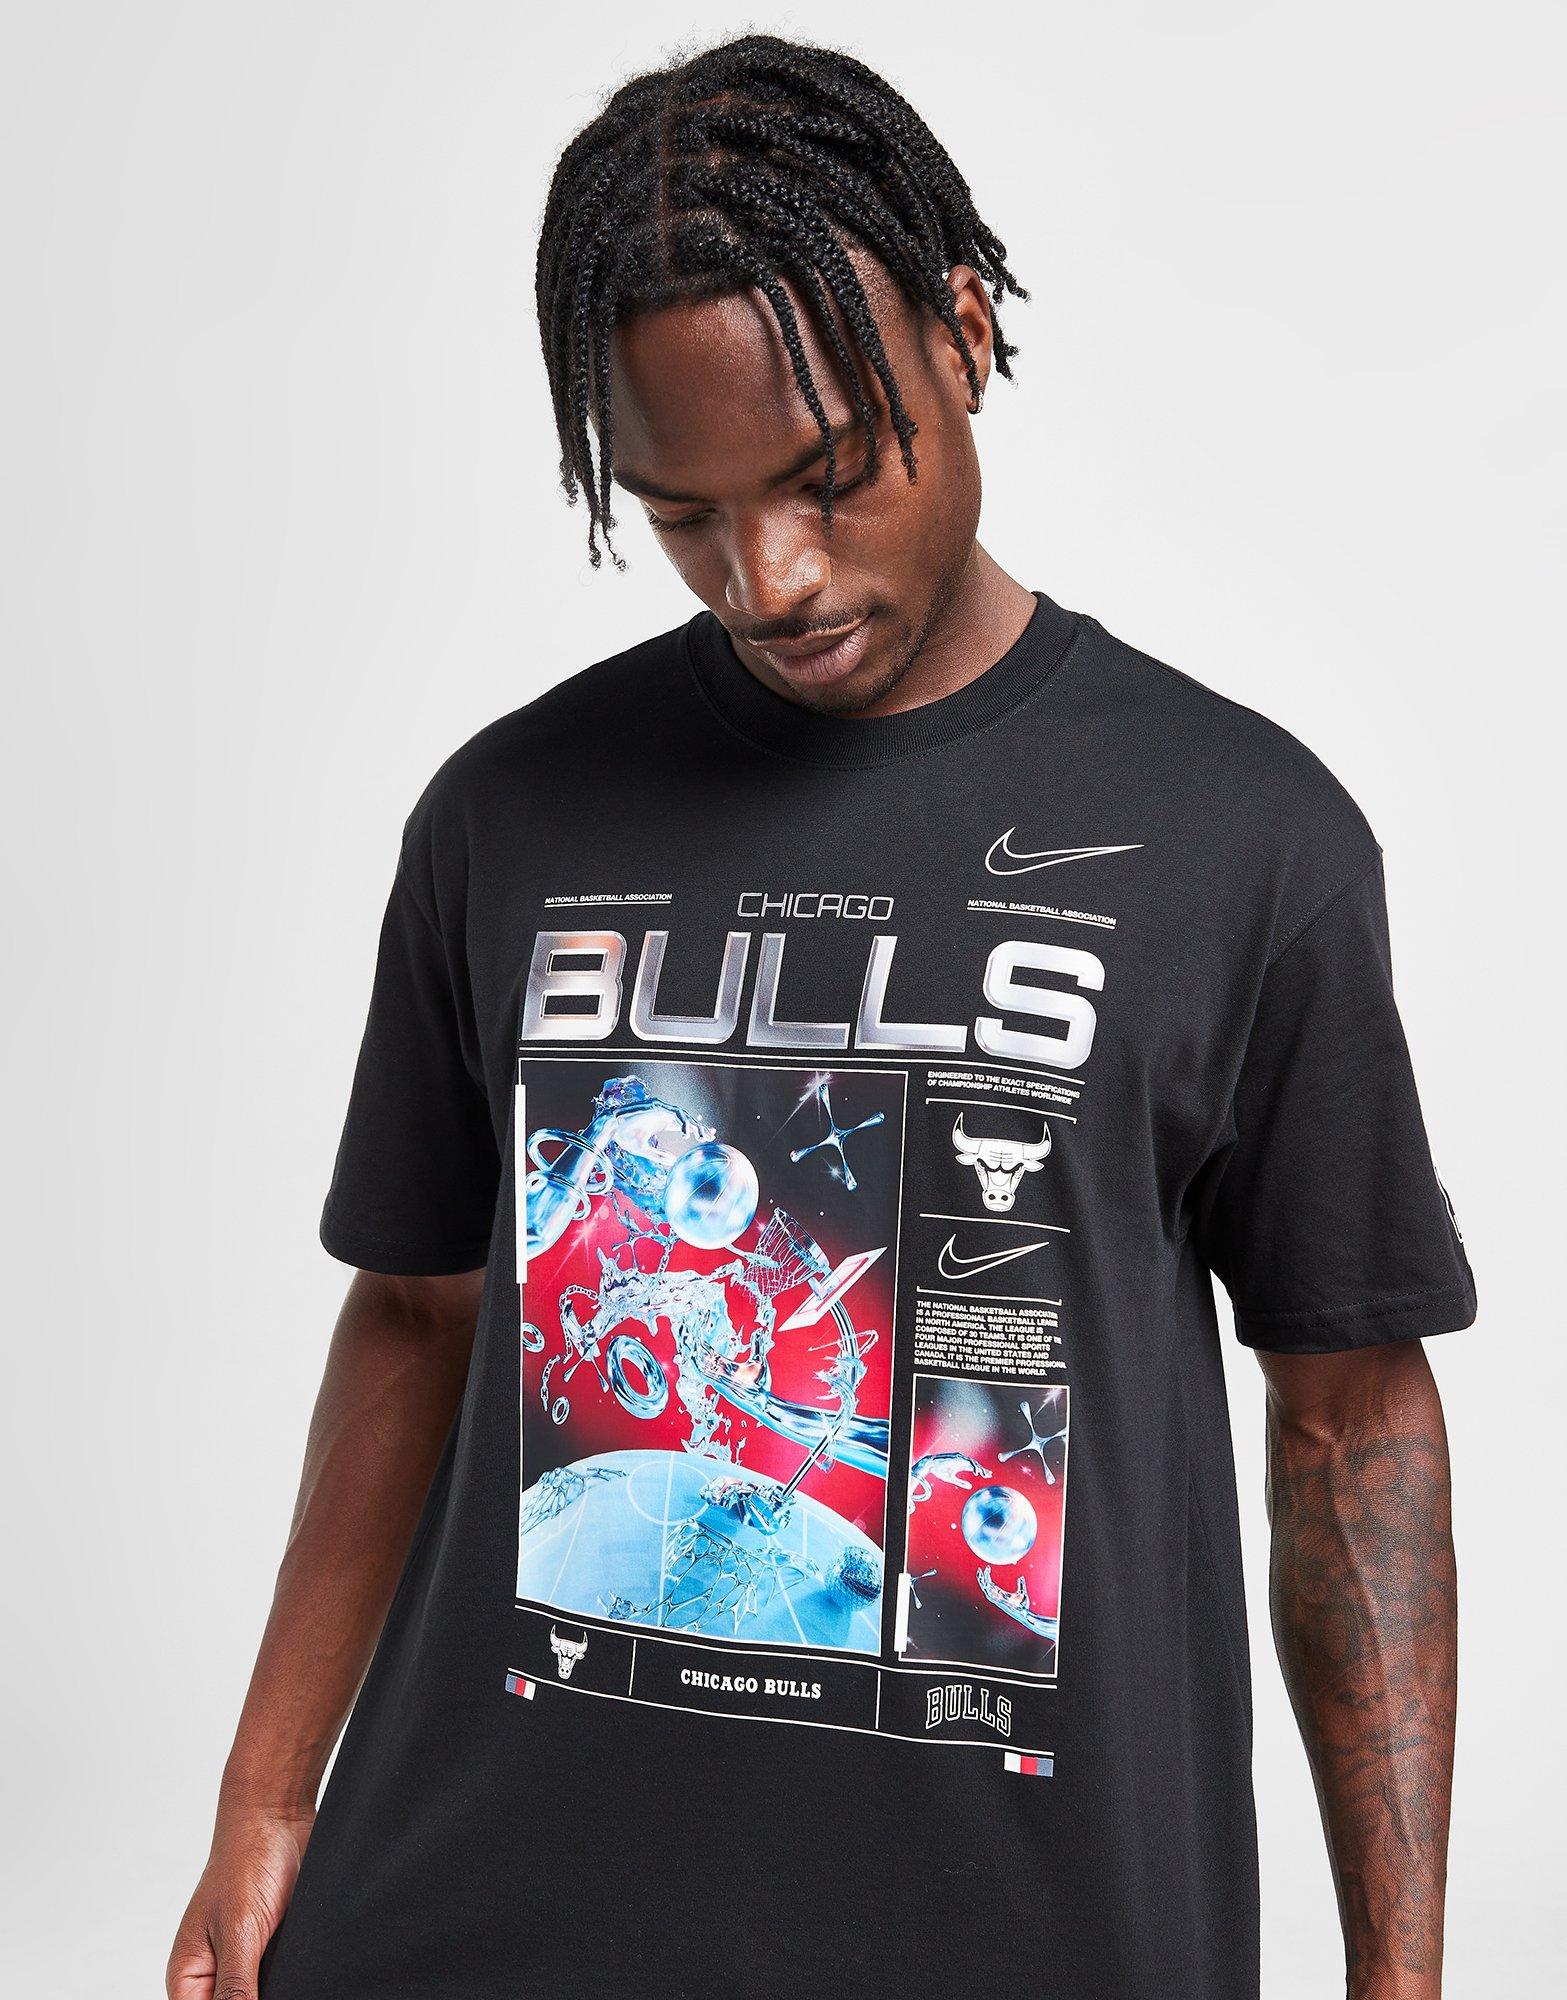 Official chicago Bulls Jordan Basketball Player 23 T-Shirt, hoodie